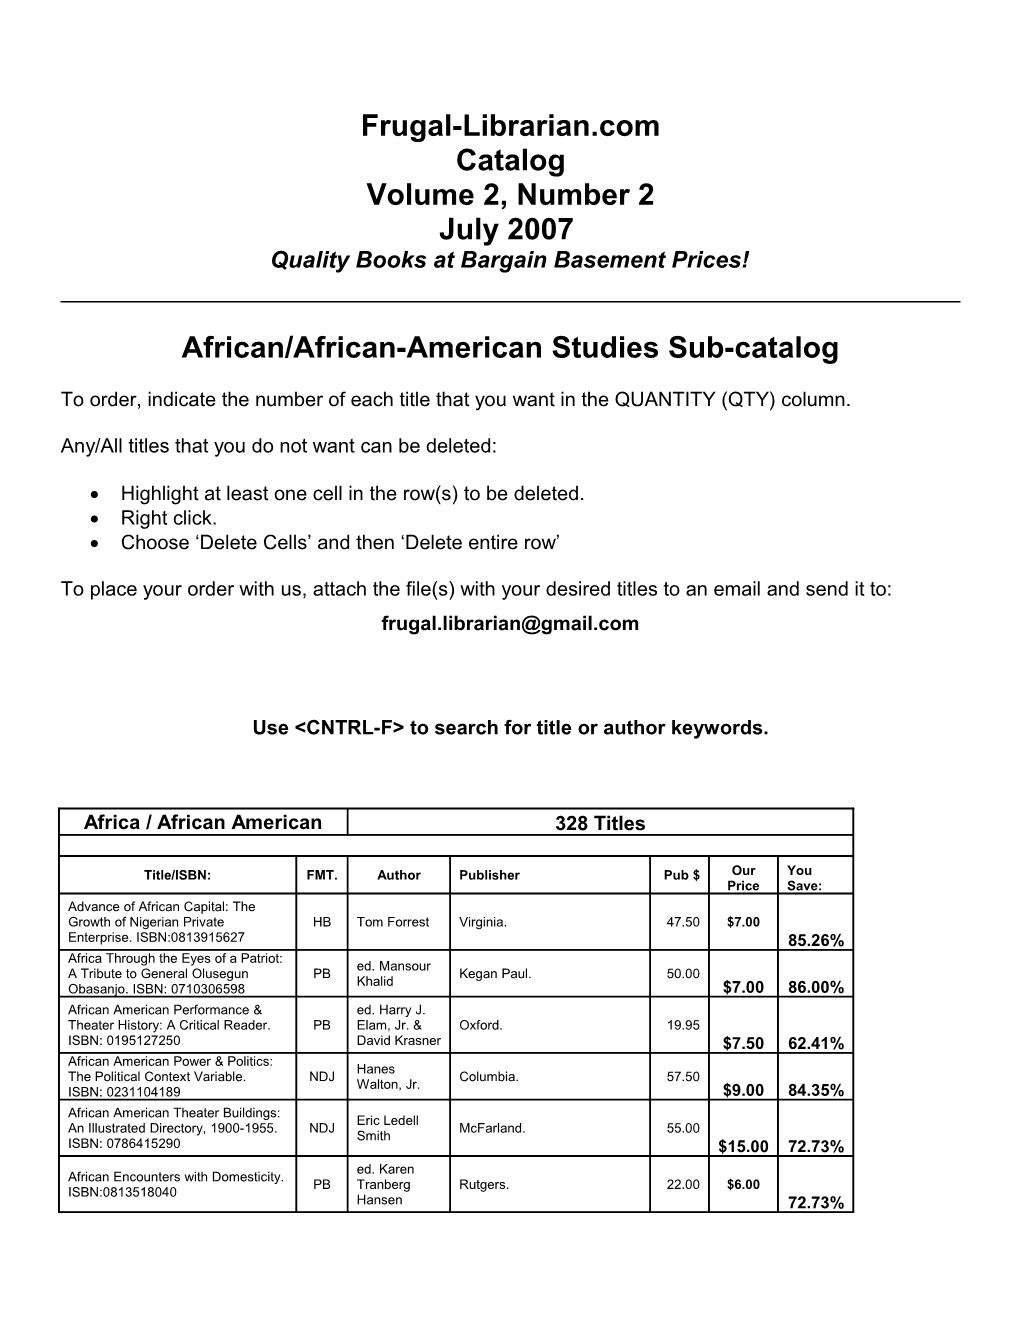 African/African-American Studies